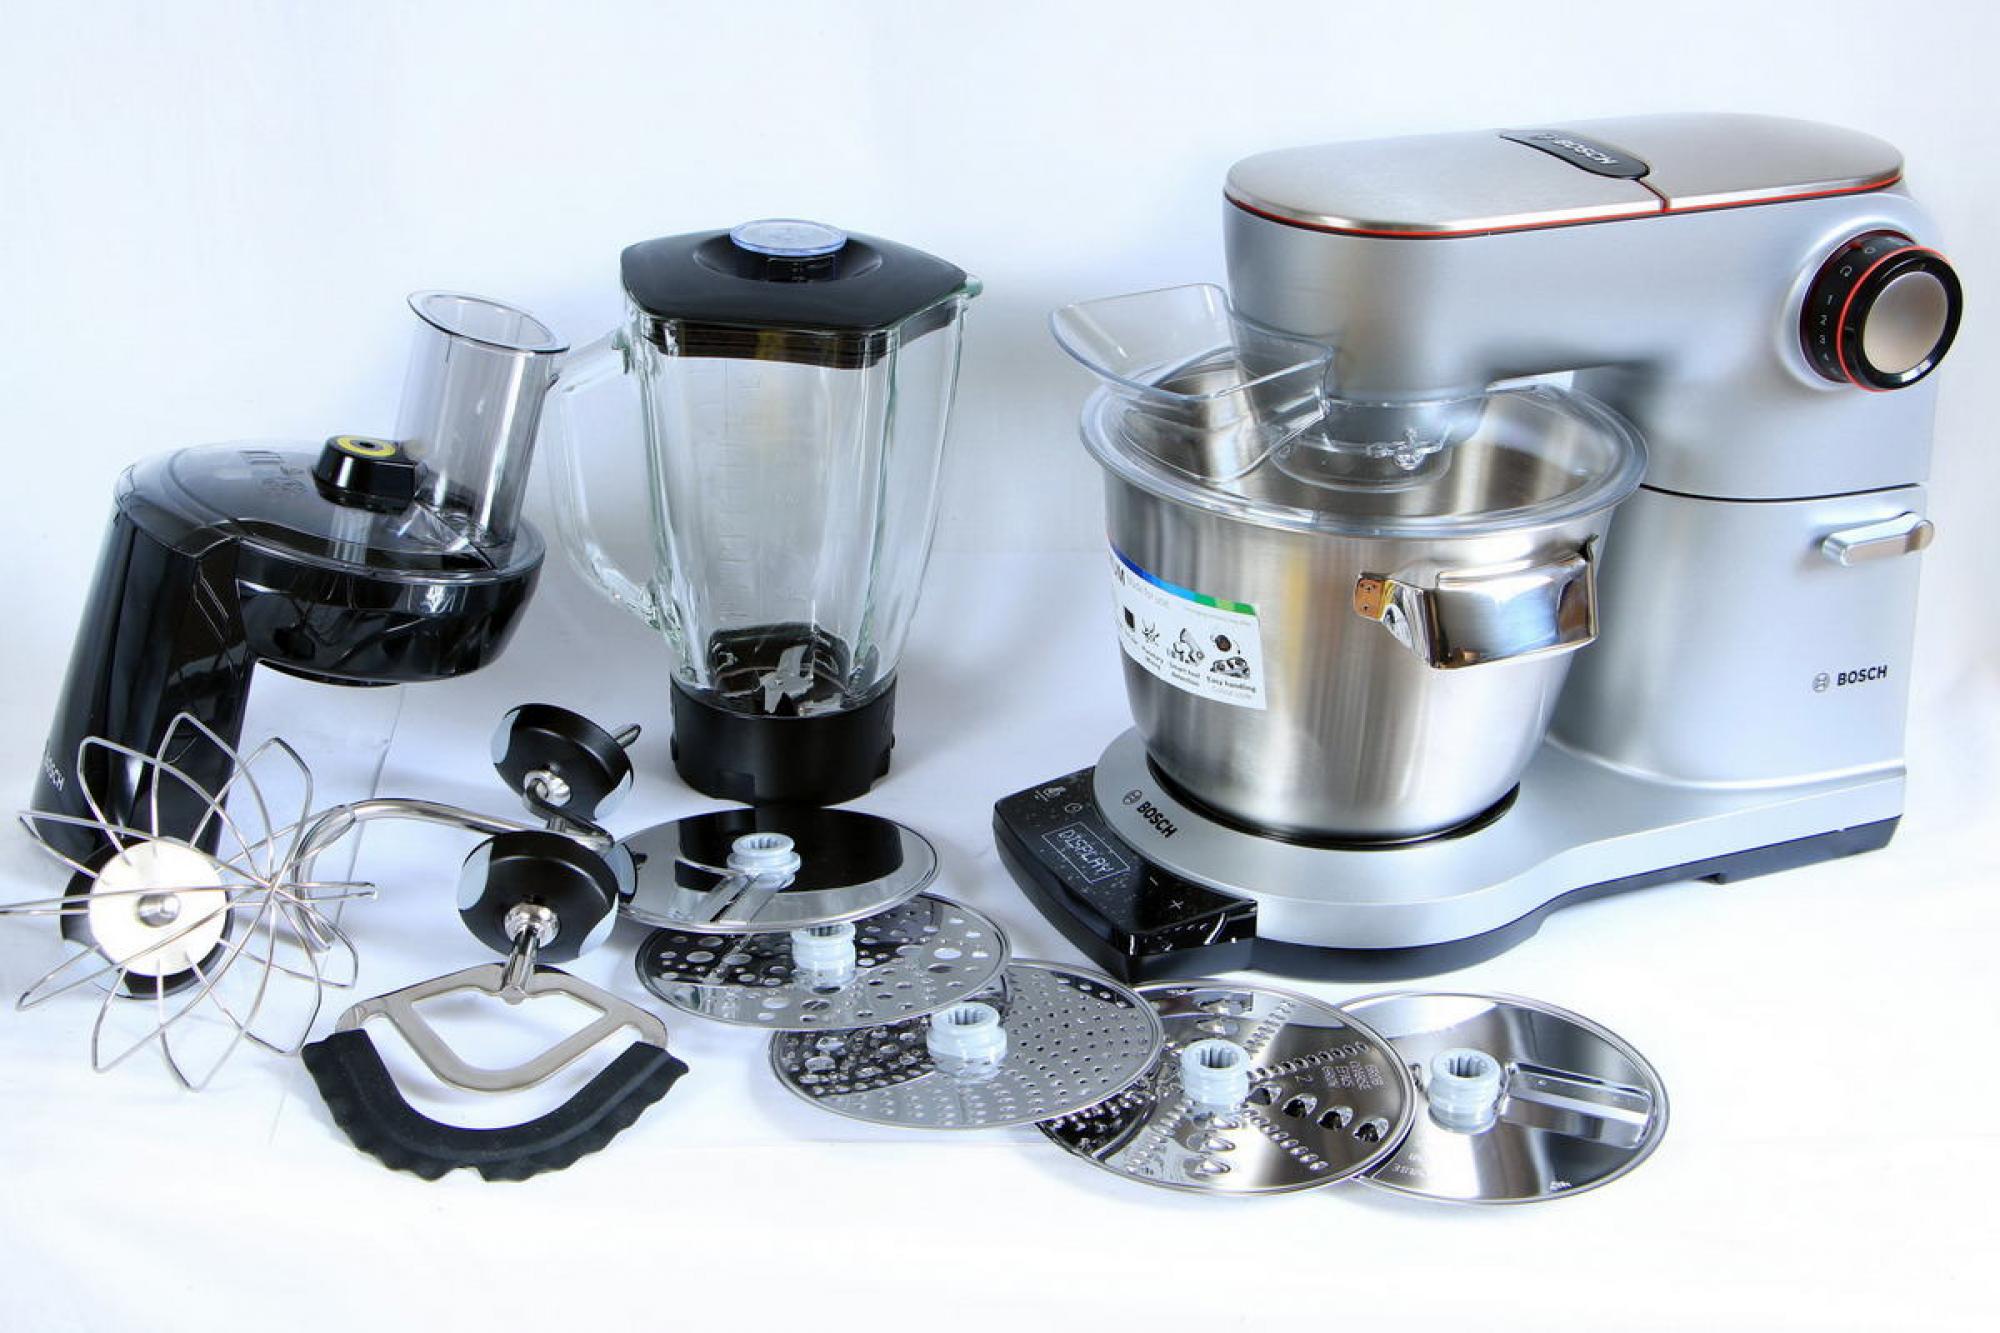 Bosch OptiMUM 9 Küchenmaschine 1500W 5,5l + Zubehör Silber MUM9DT5S41 B-Ware 18